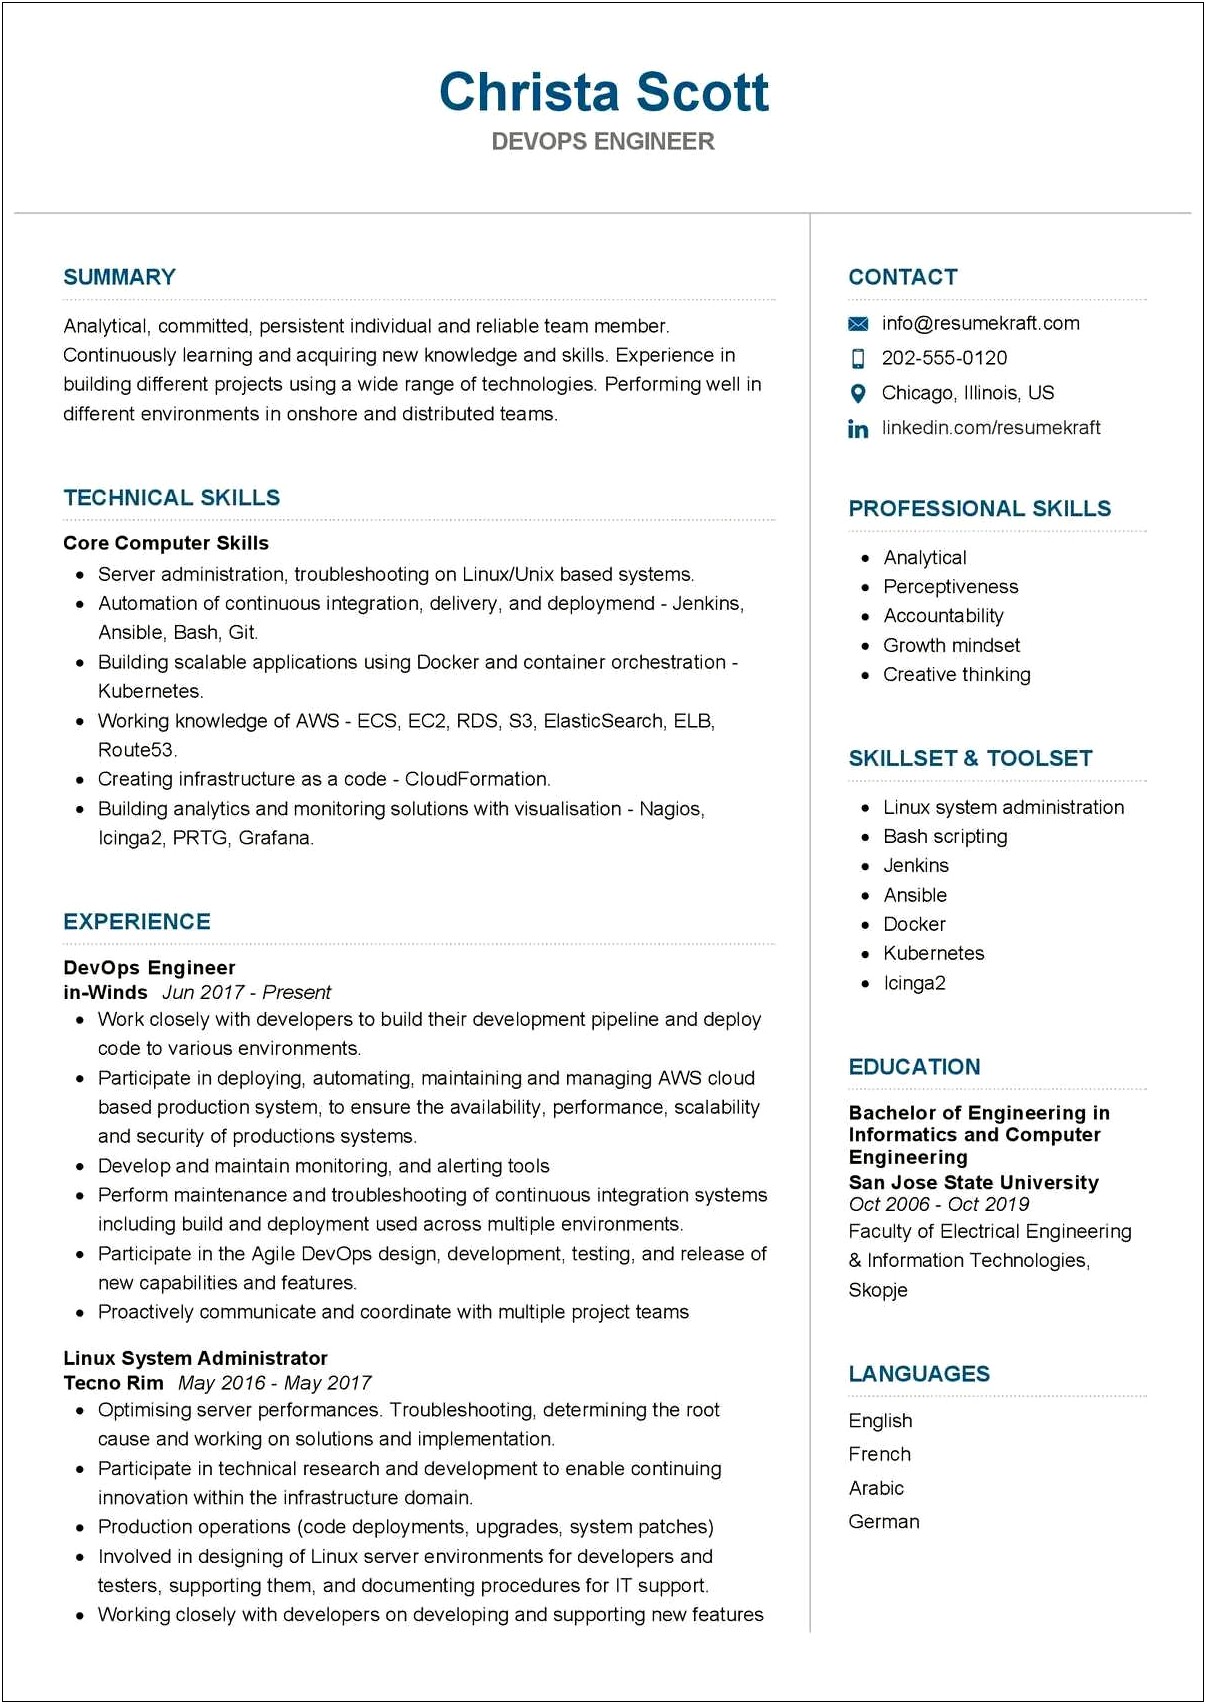 Sample Resume For Devops Engineer